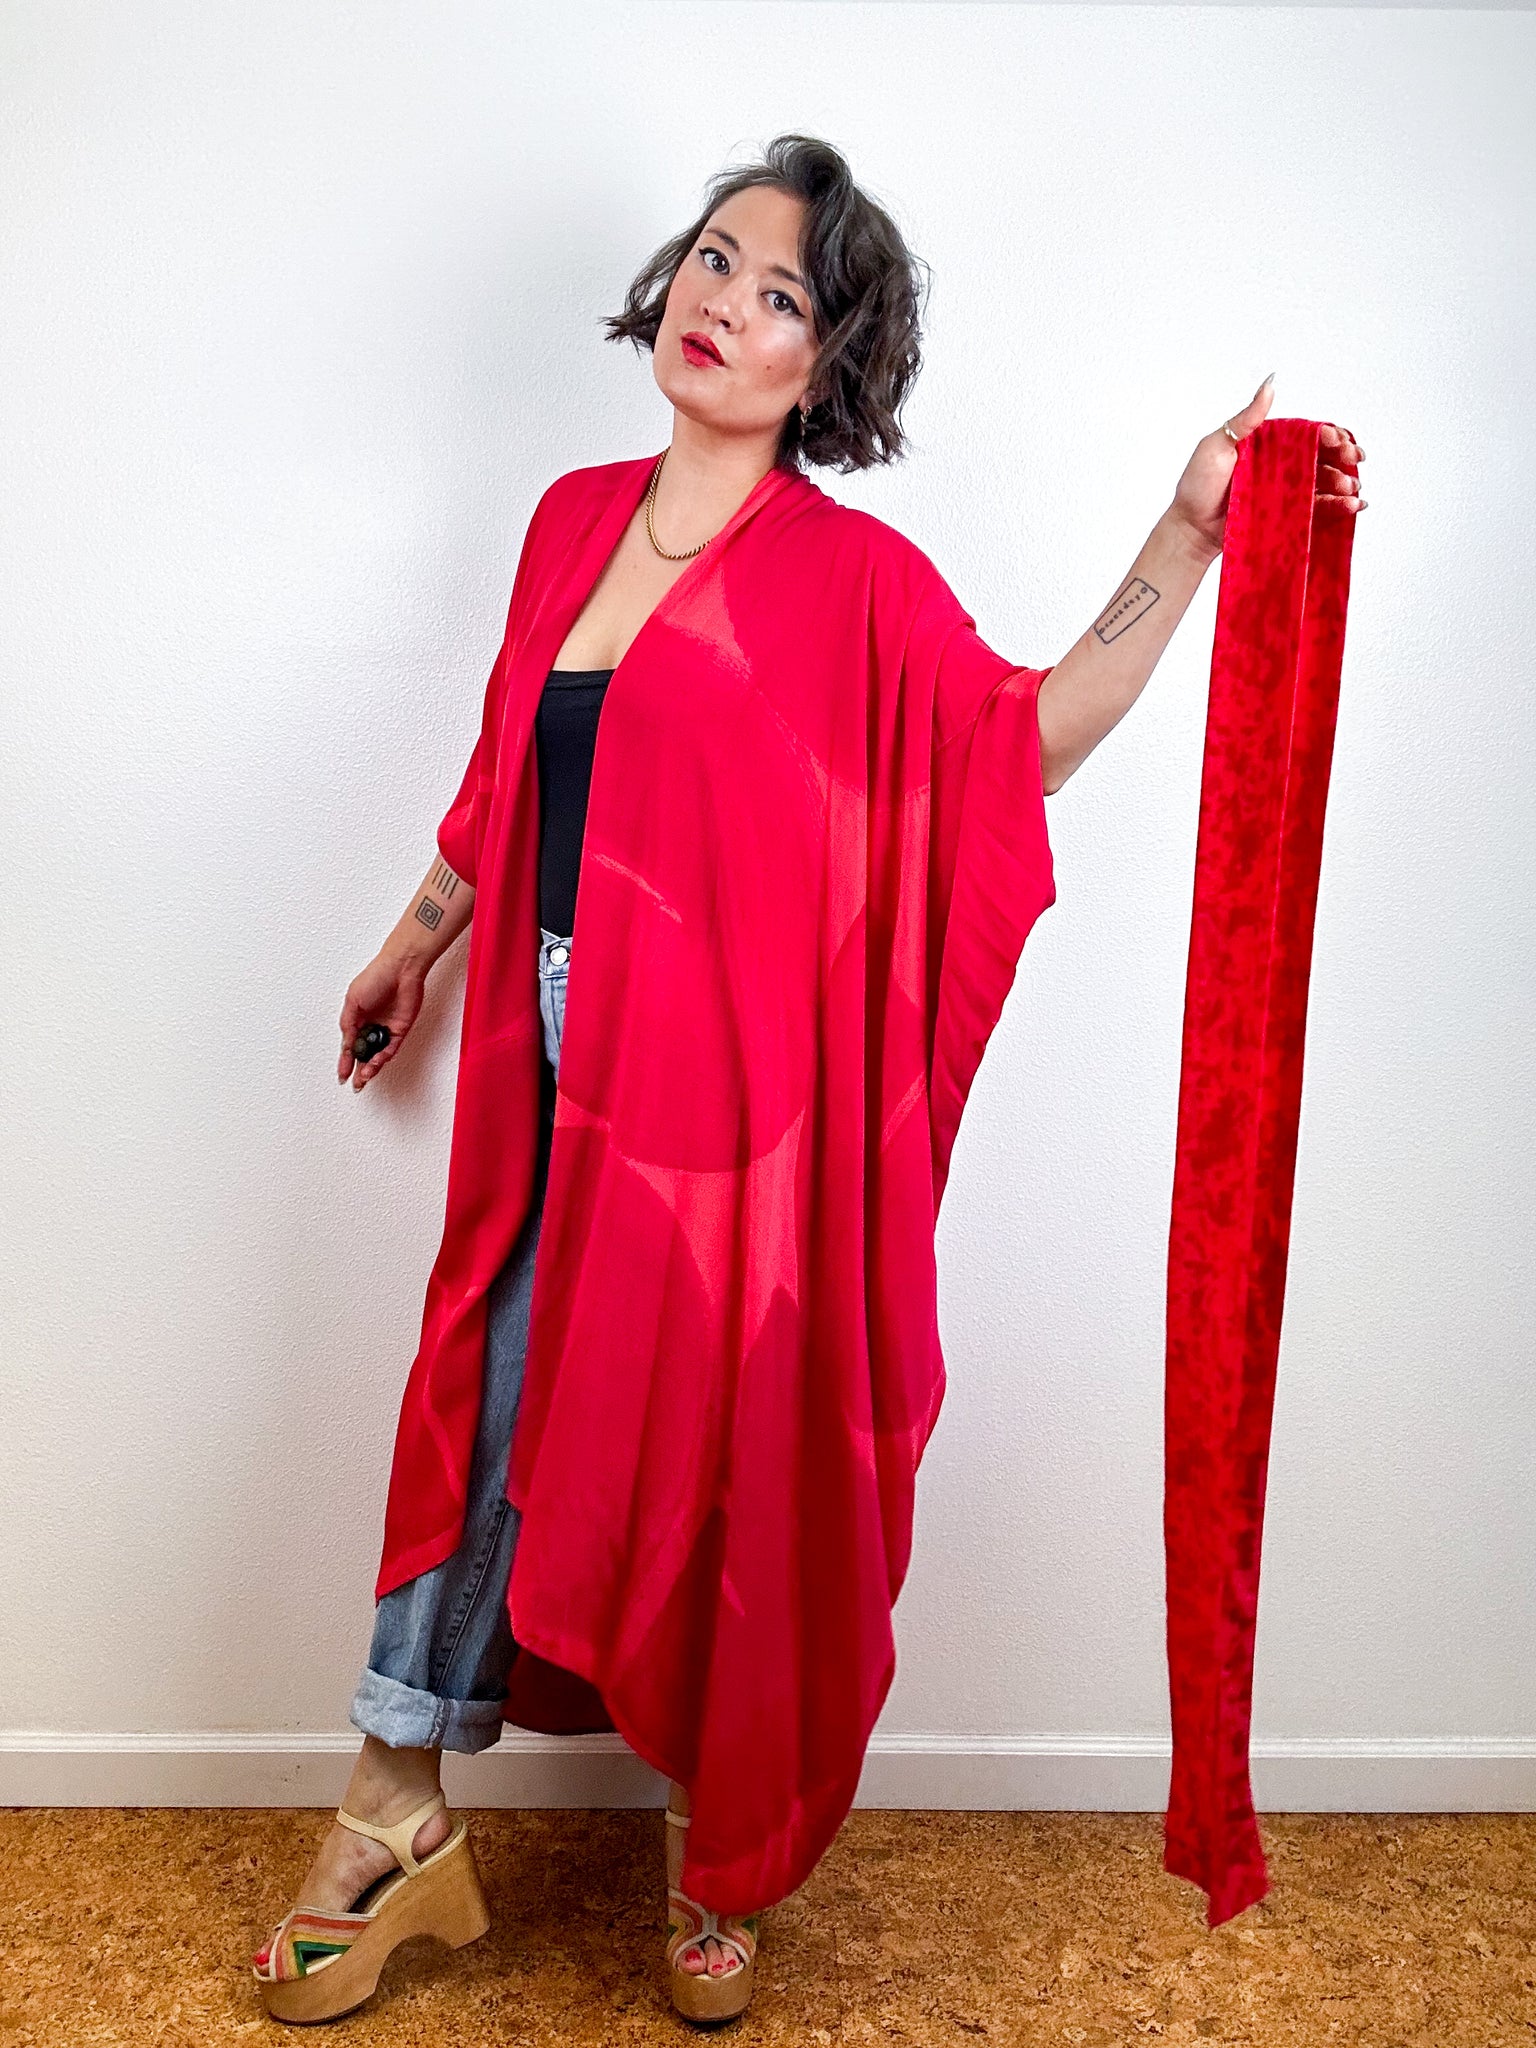 Hand-Dyed High Low Kimono Scarlet Fuchsia Arc